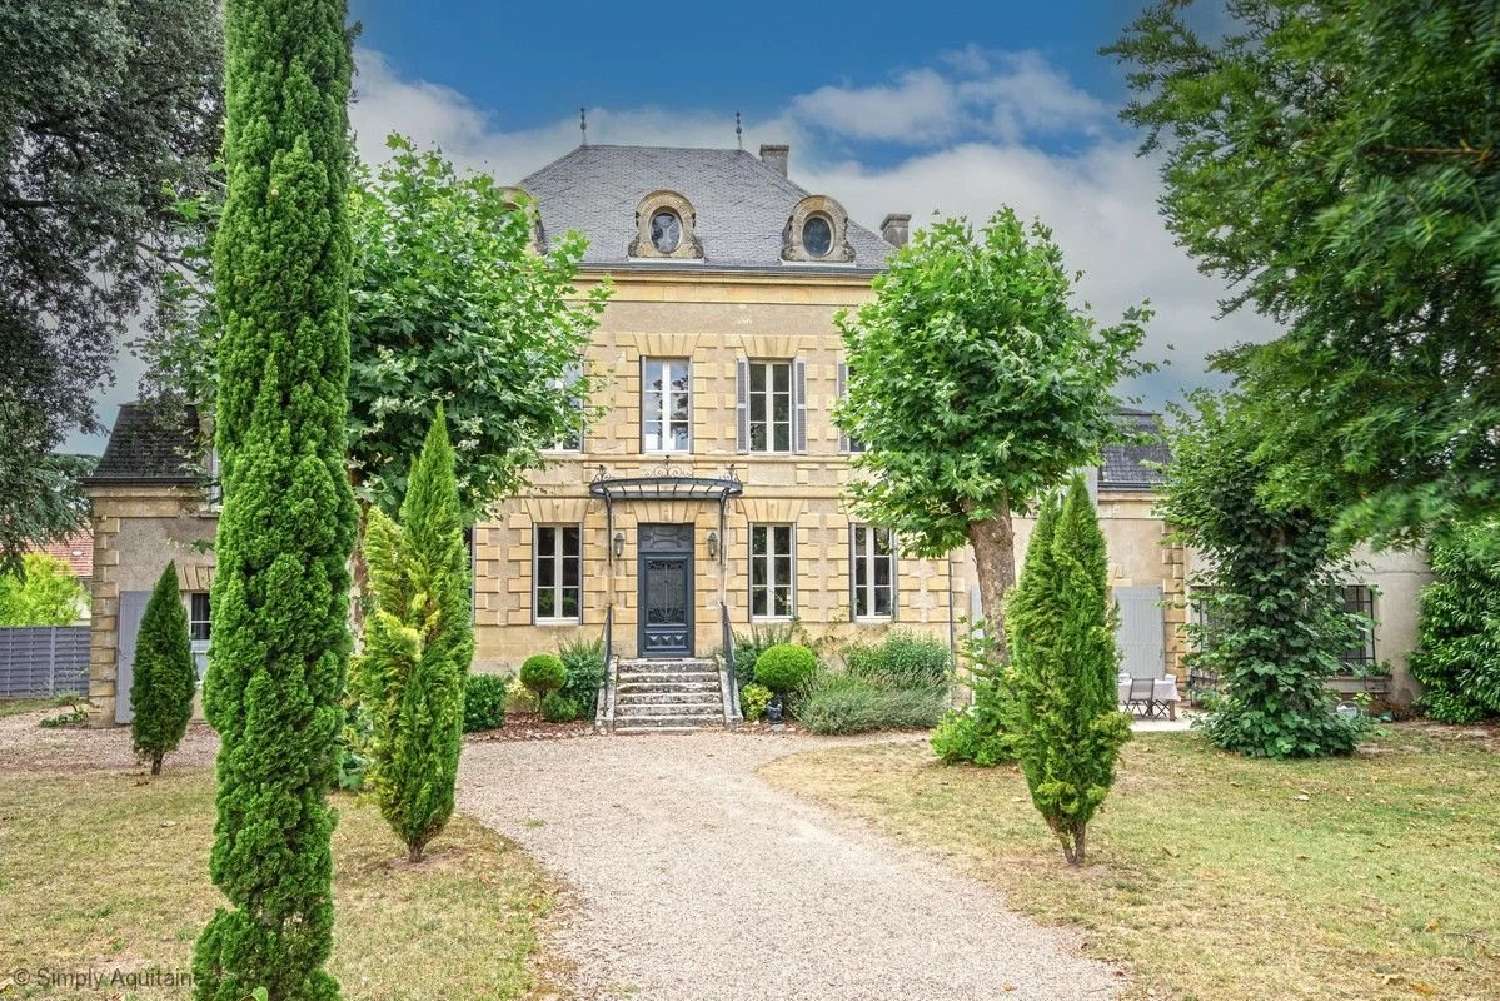  à vendre villa Le Vibal Aveyron 1